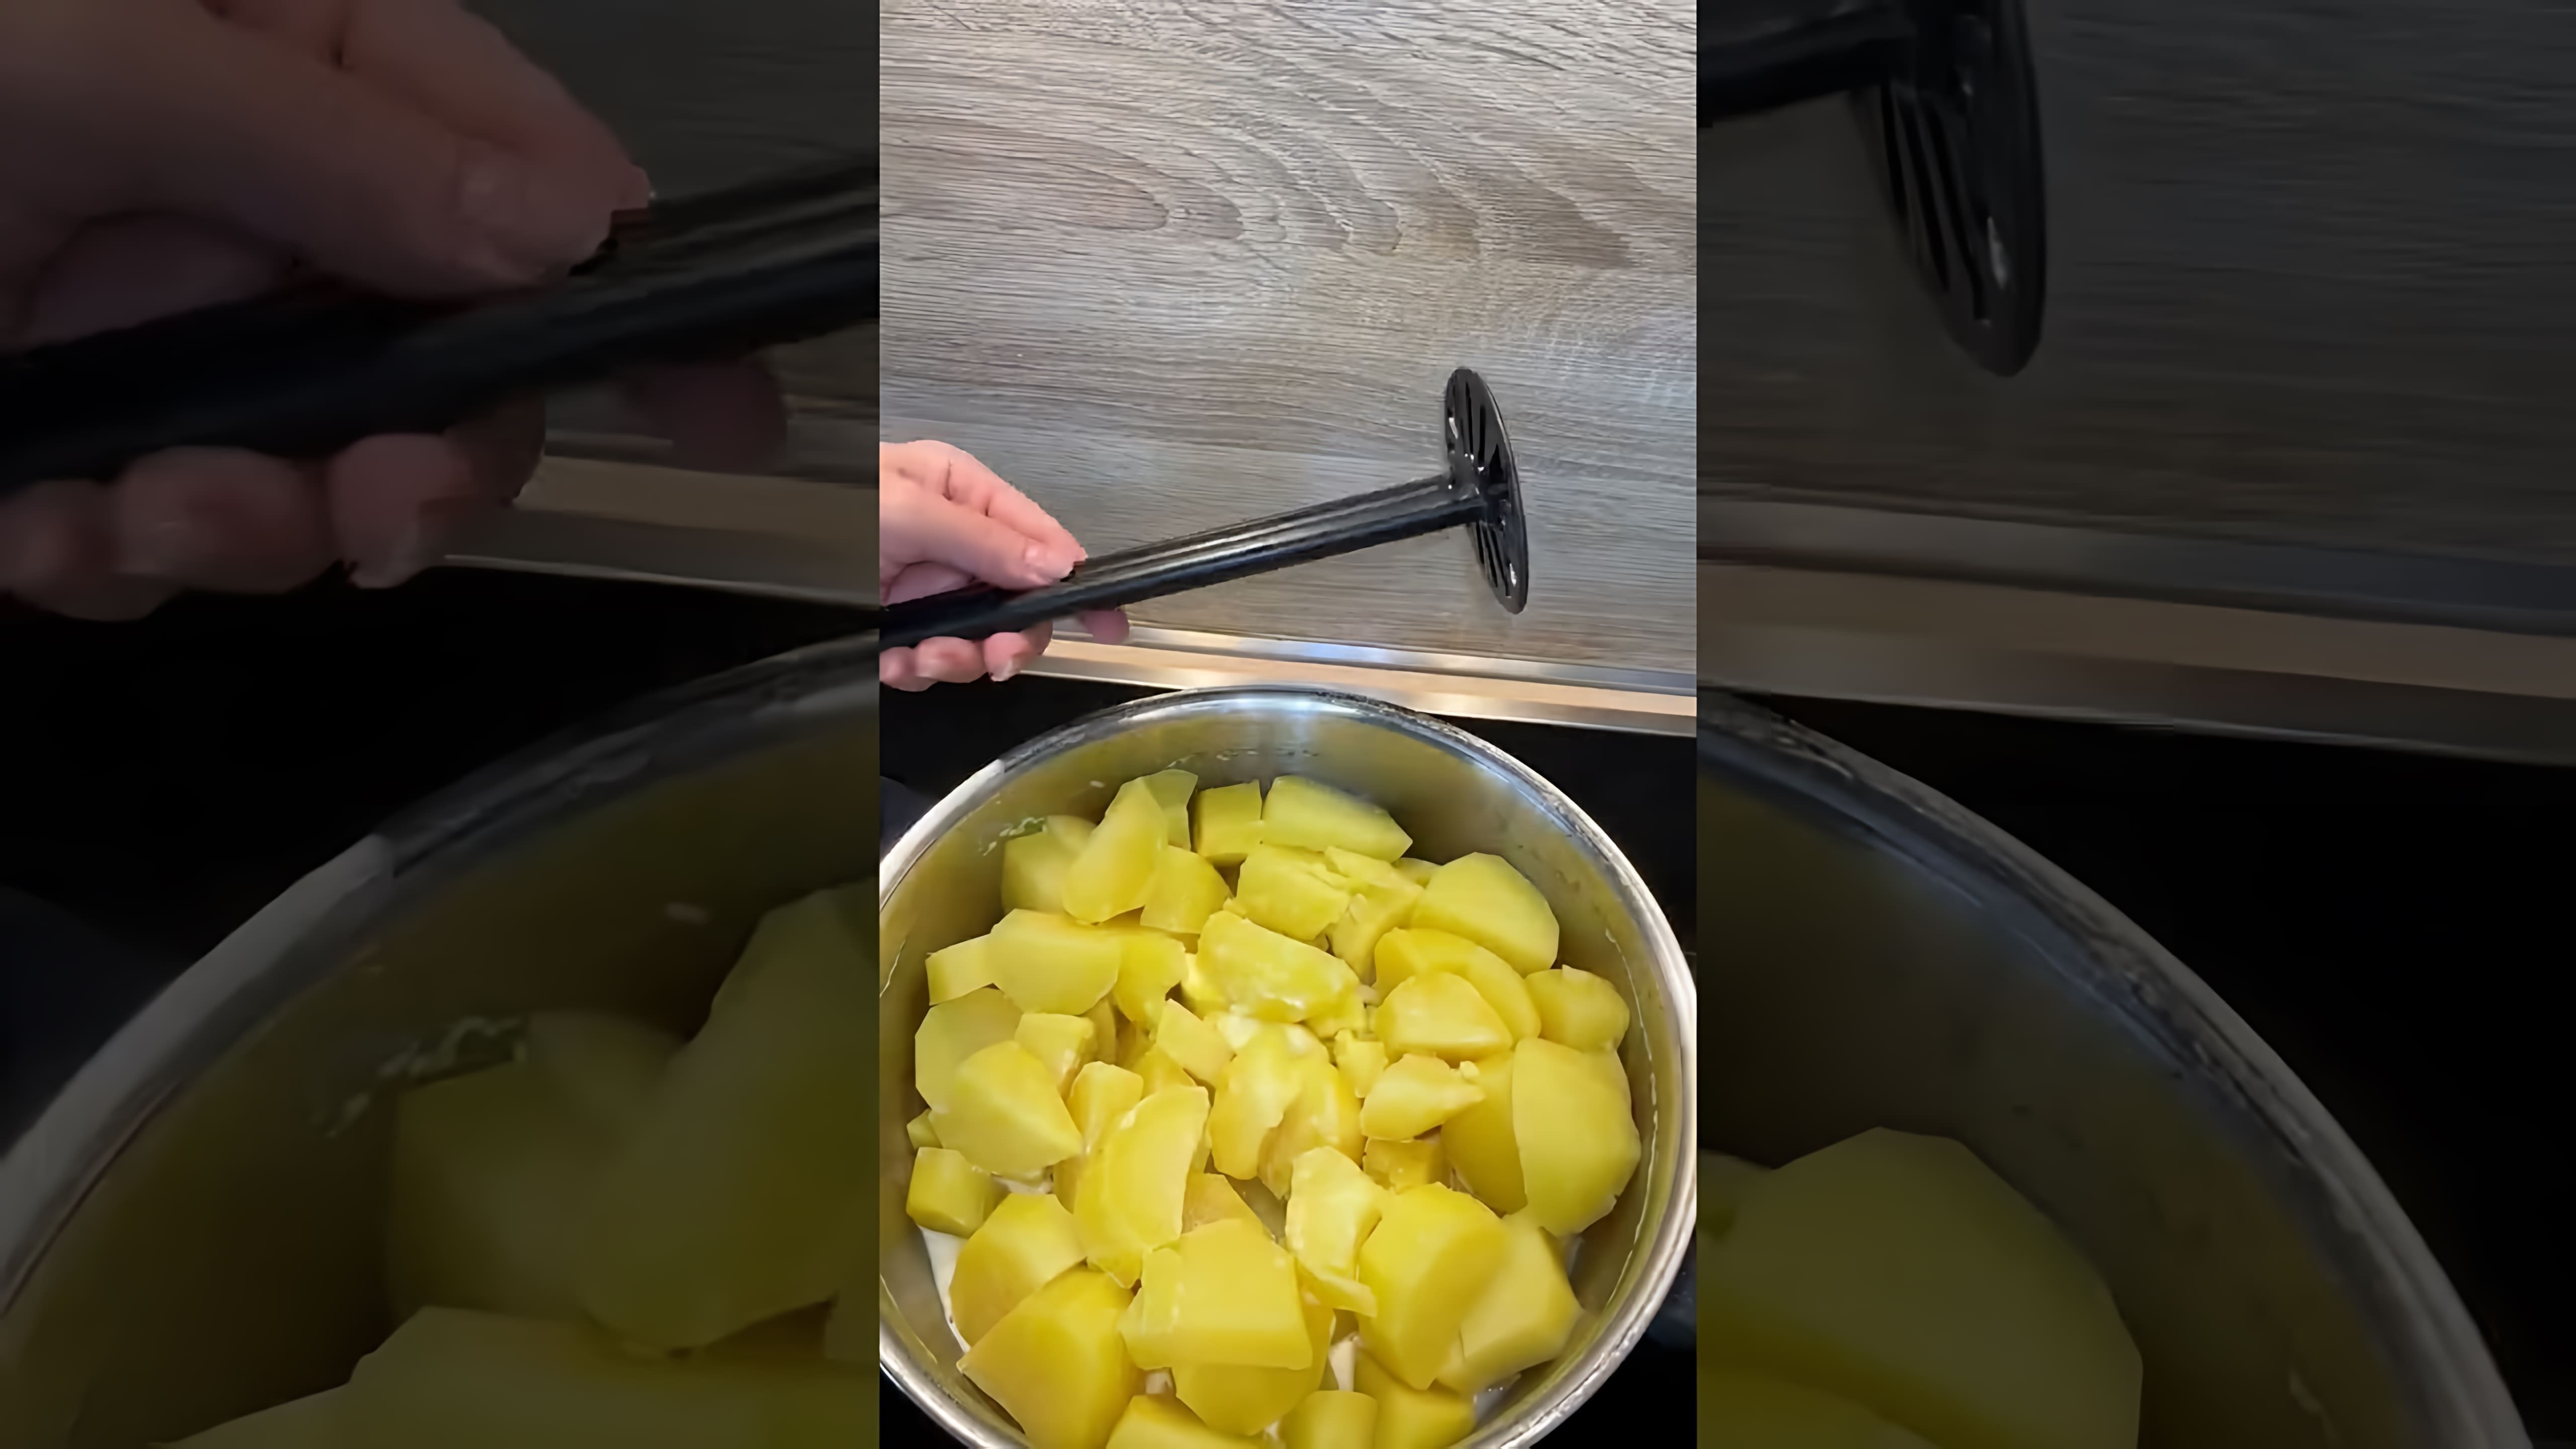 В этом видео демонстрируется процесс приготовления картофельного пюре, который напоминает рецепт из столовой